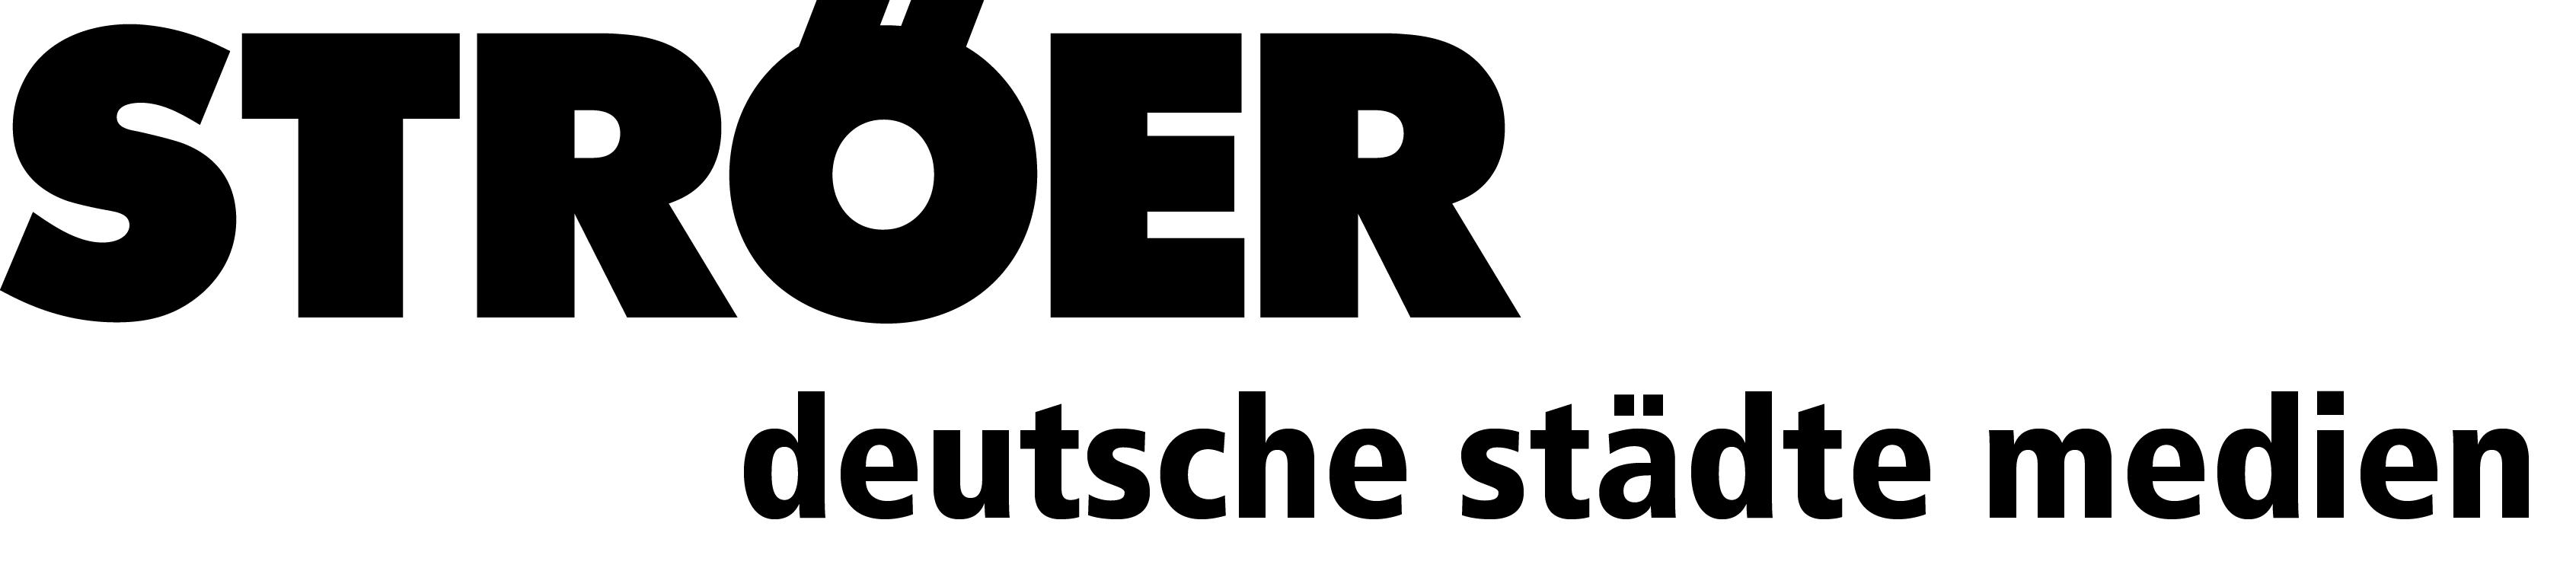 Logo Ströer Deutsche Städte Medien GmbH